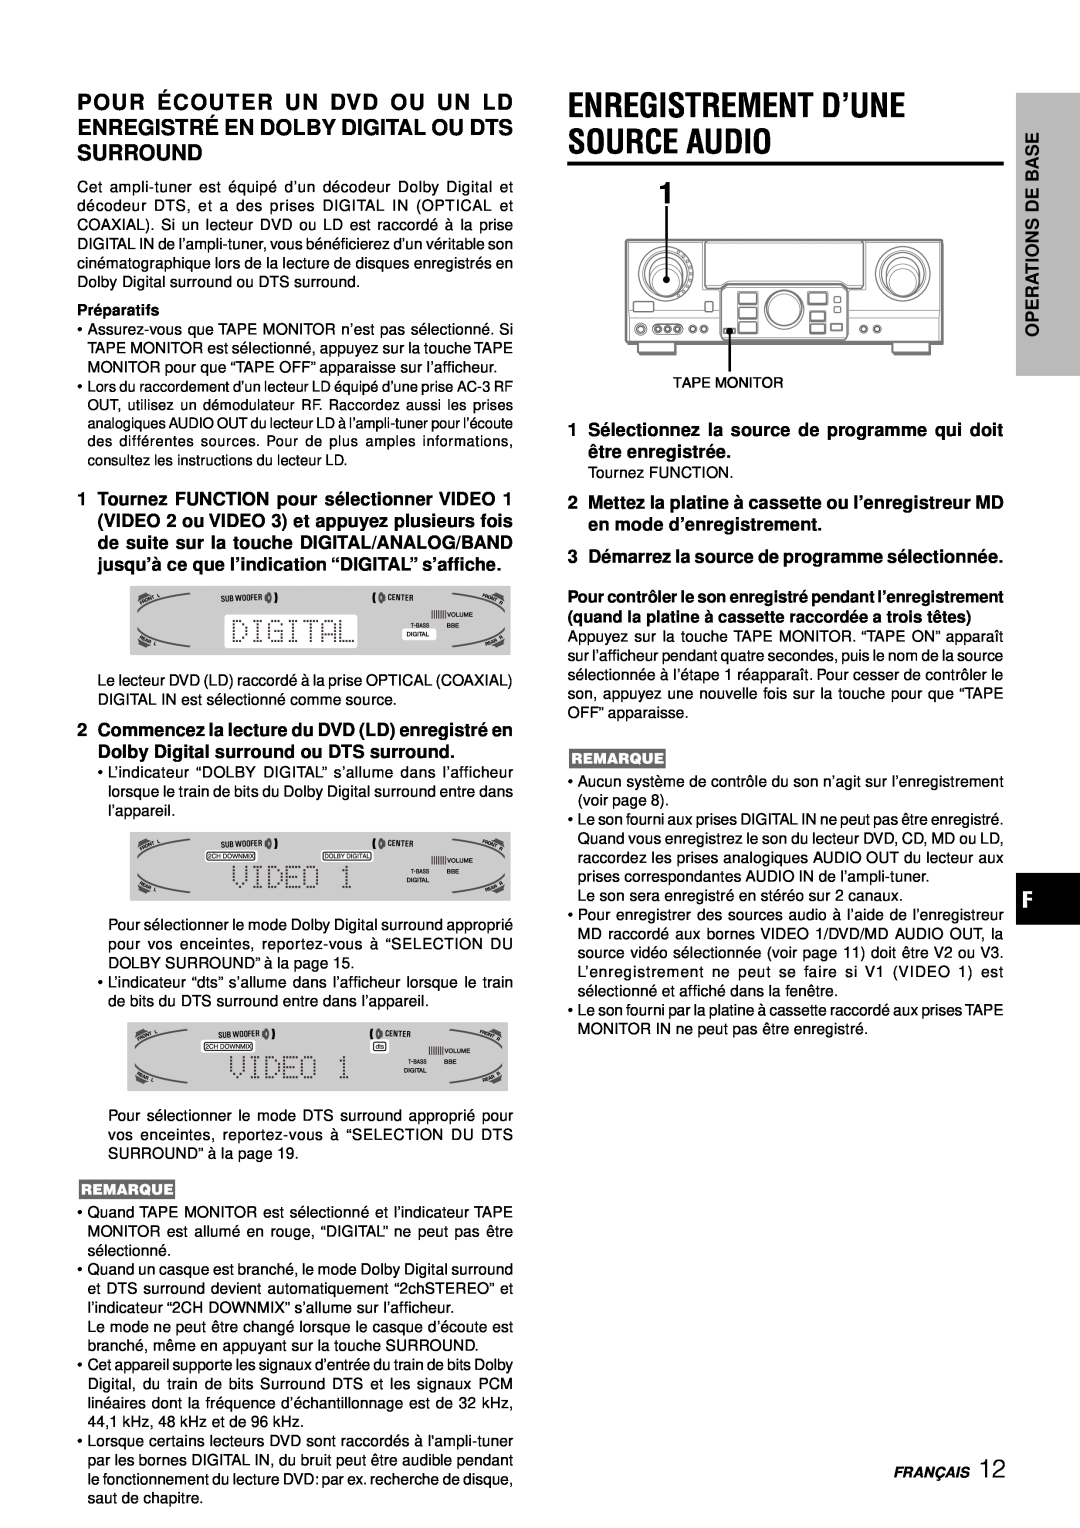 Aiwa AV-D77 manual Enregistrement D’Une, 3Dé marrez la source de programme sé lectionné e 